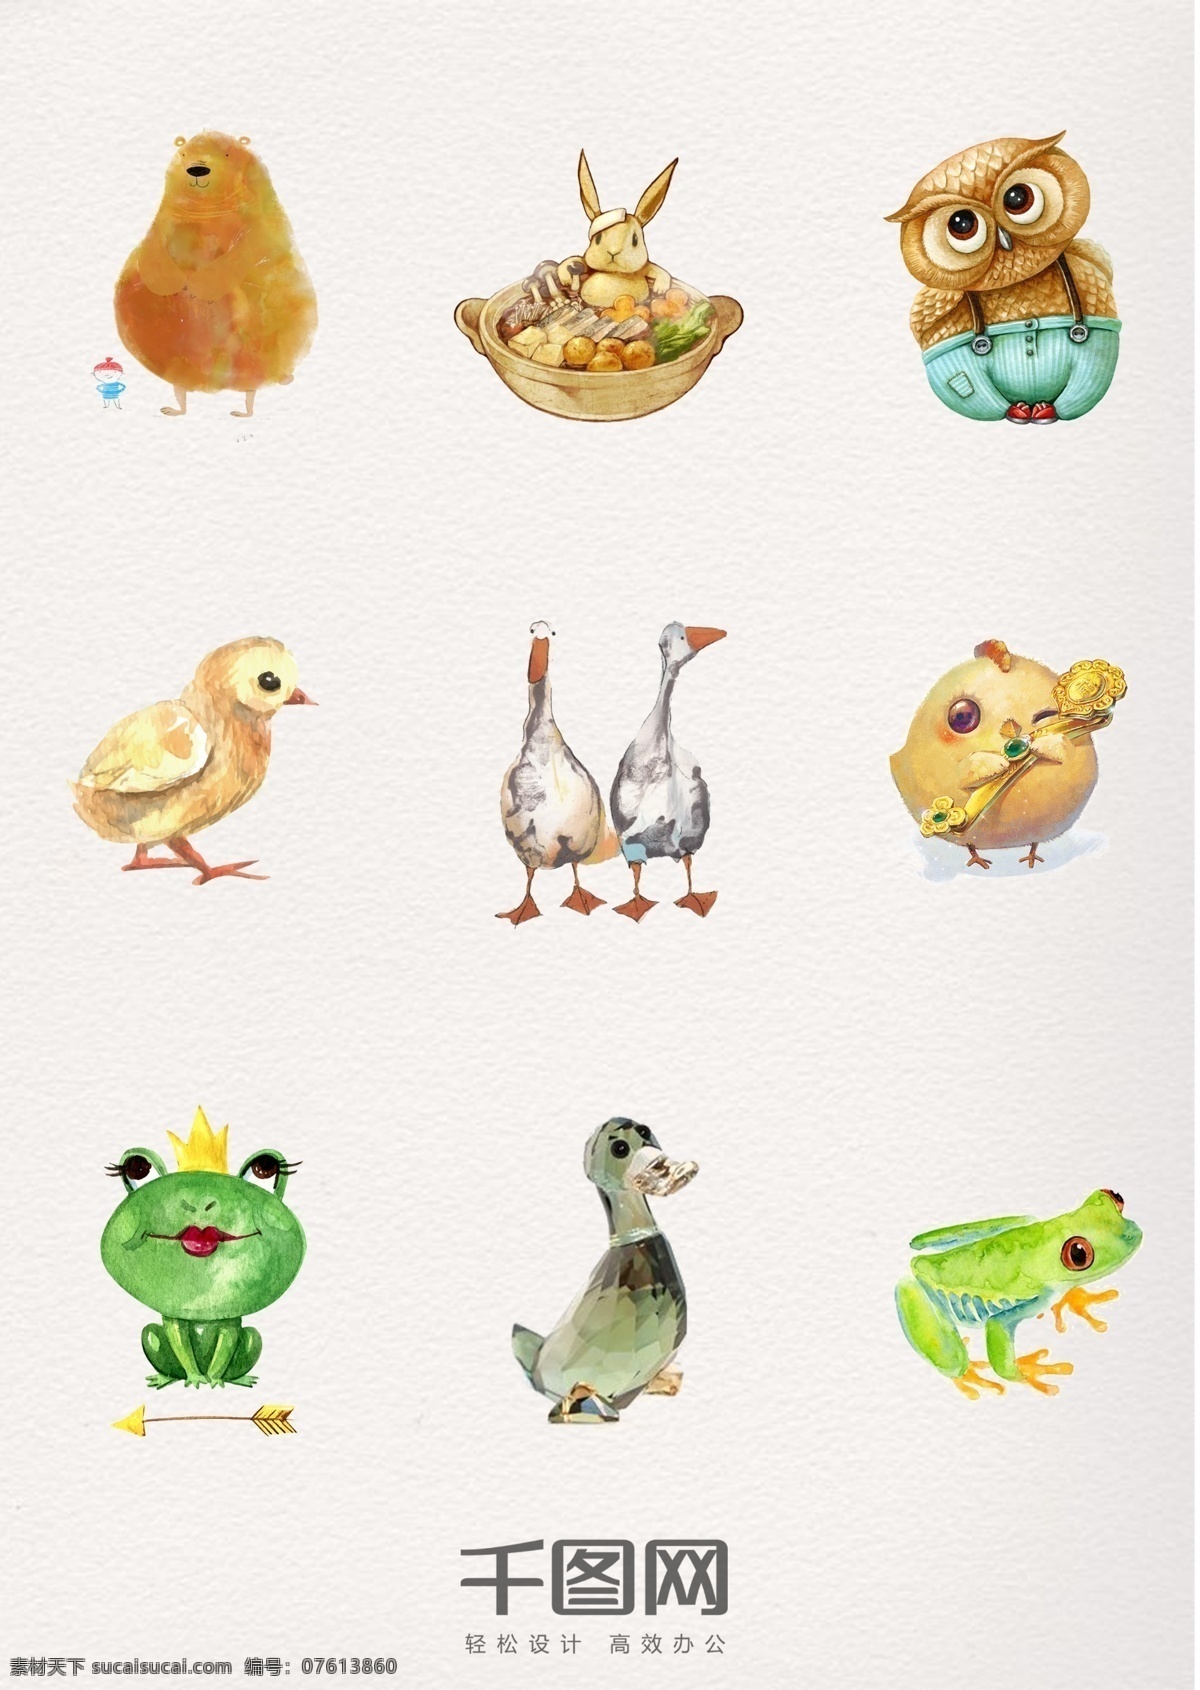 组 可爱 水彩 动物 元素 psd素材 装饰 手绘 猫头鹰 鸭子 小鸡 青蛙 兔子